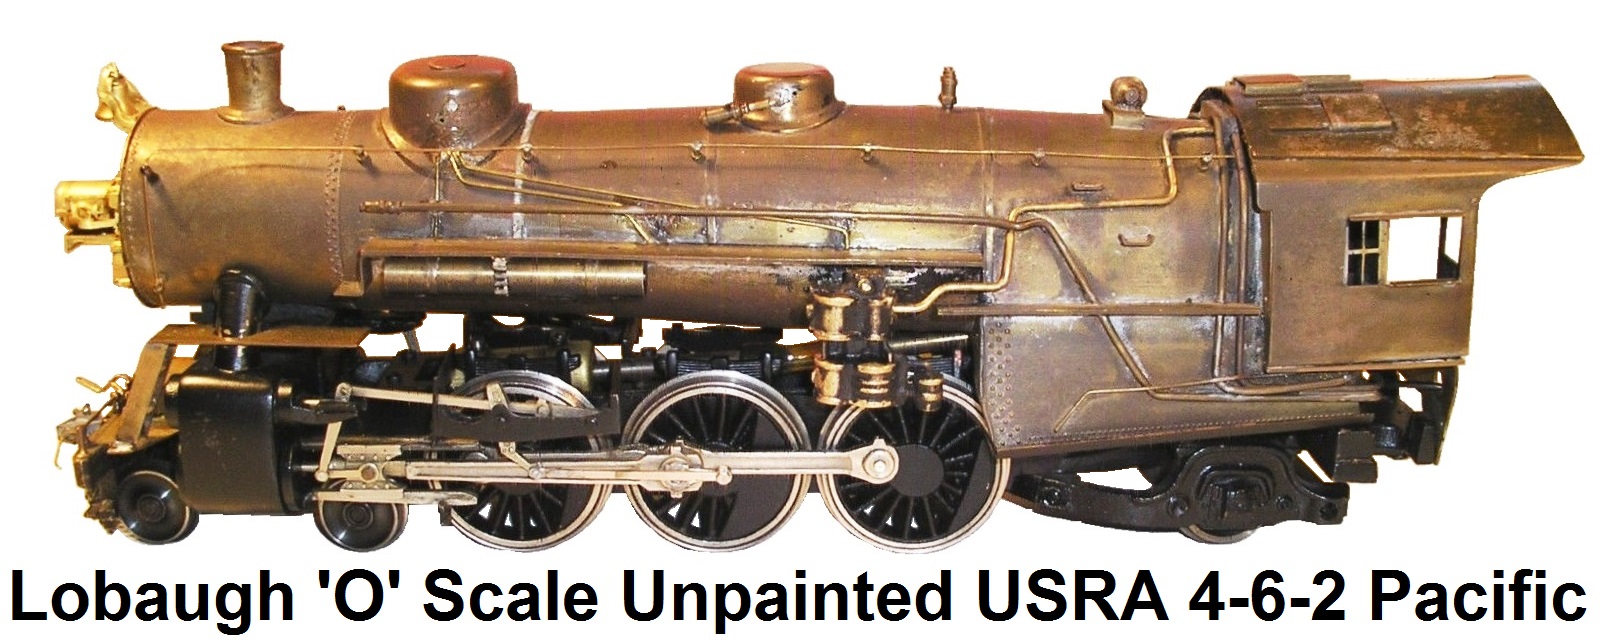 Lobaugh 'O' scale 4-6-2 USRA Pacific unpainted brass loco